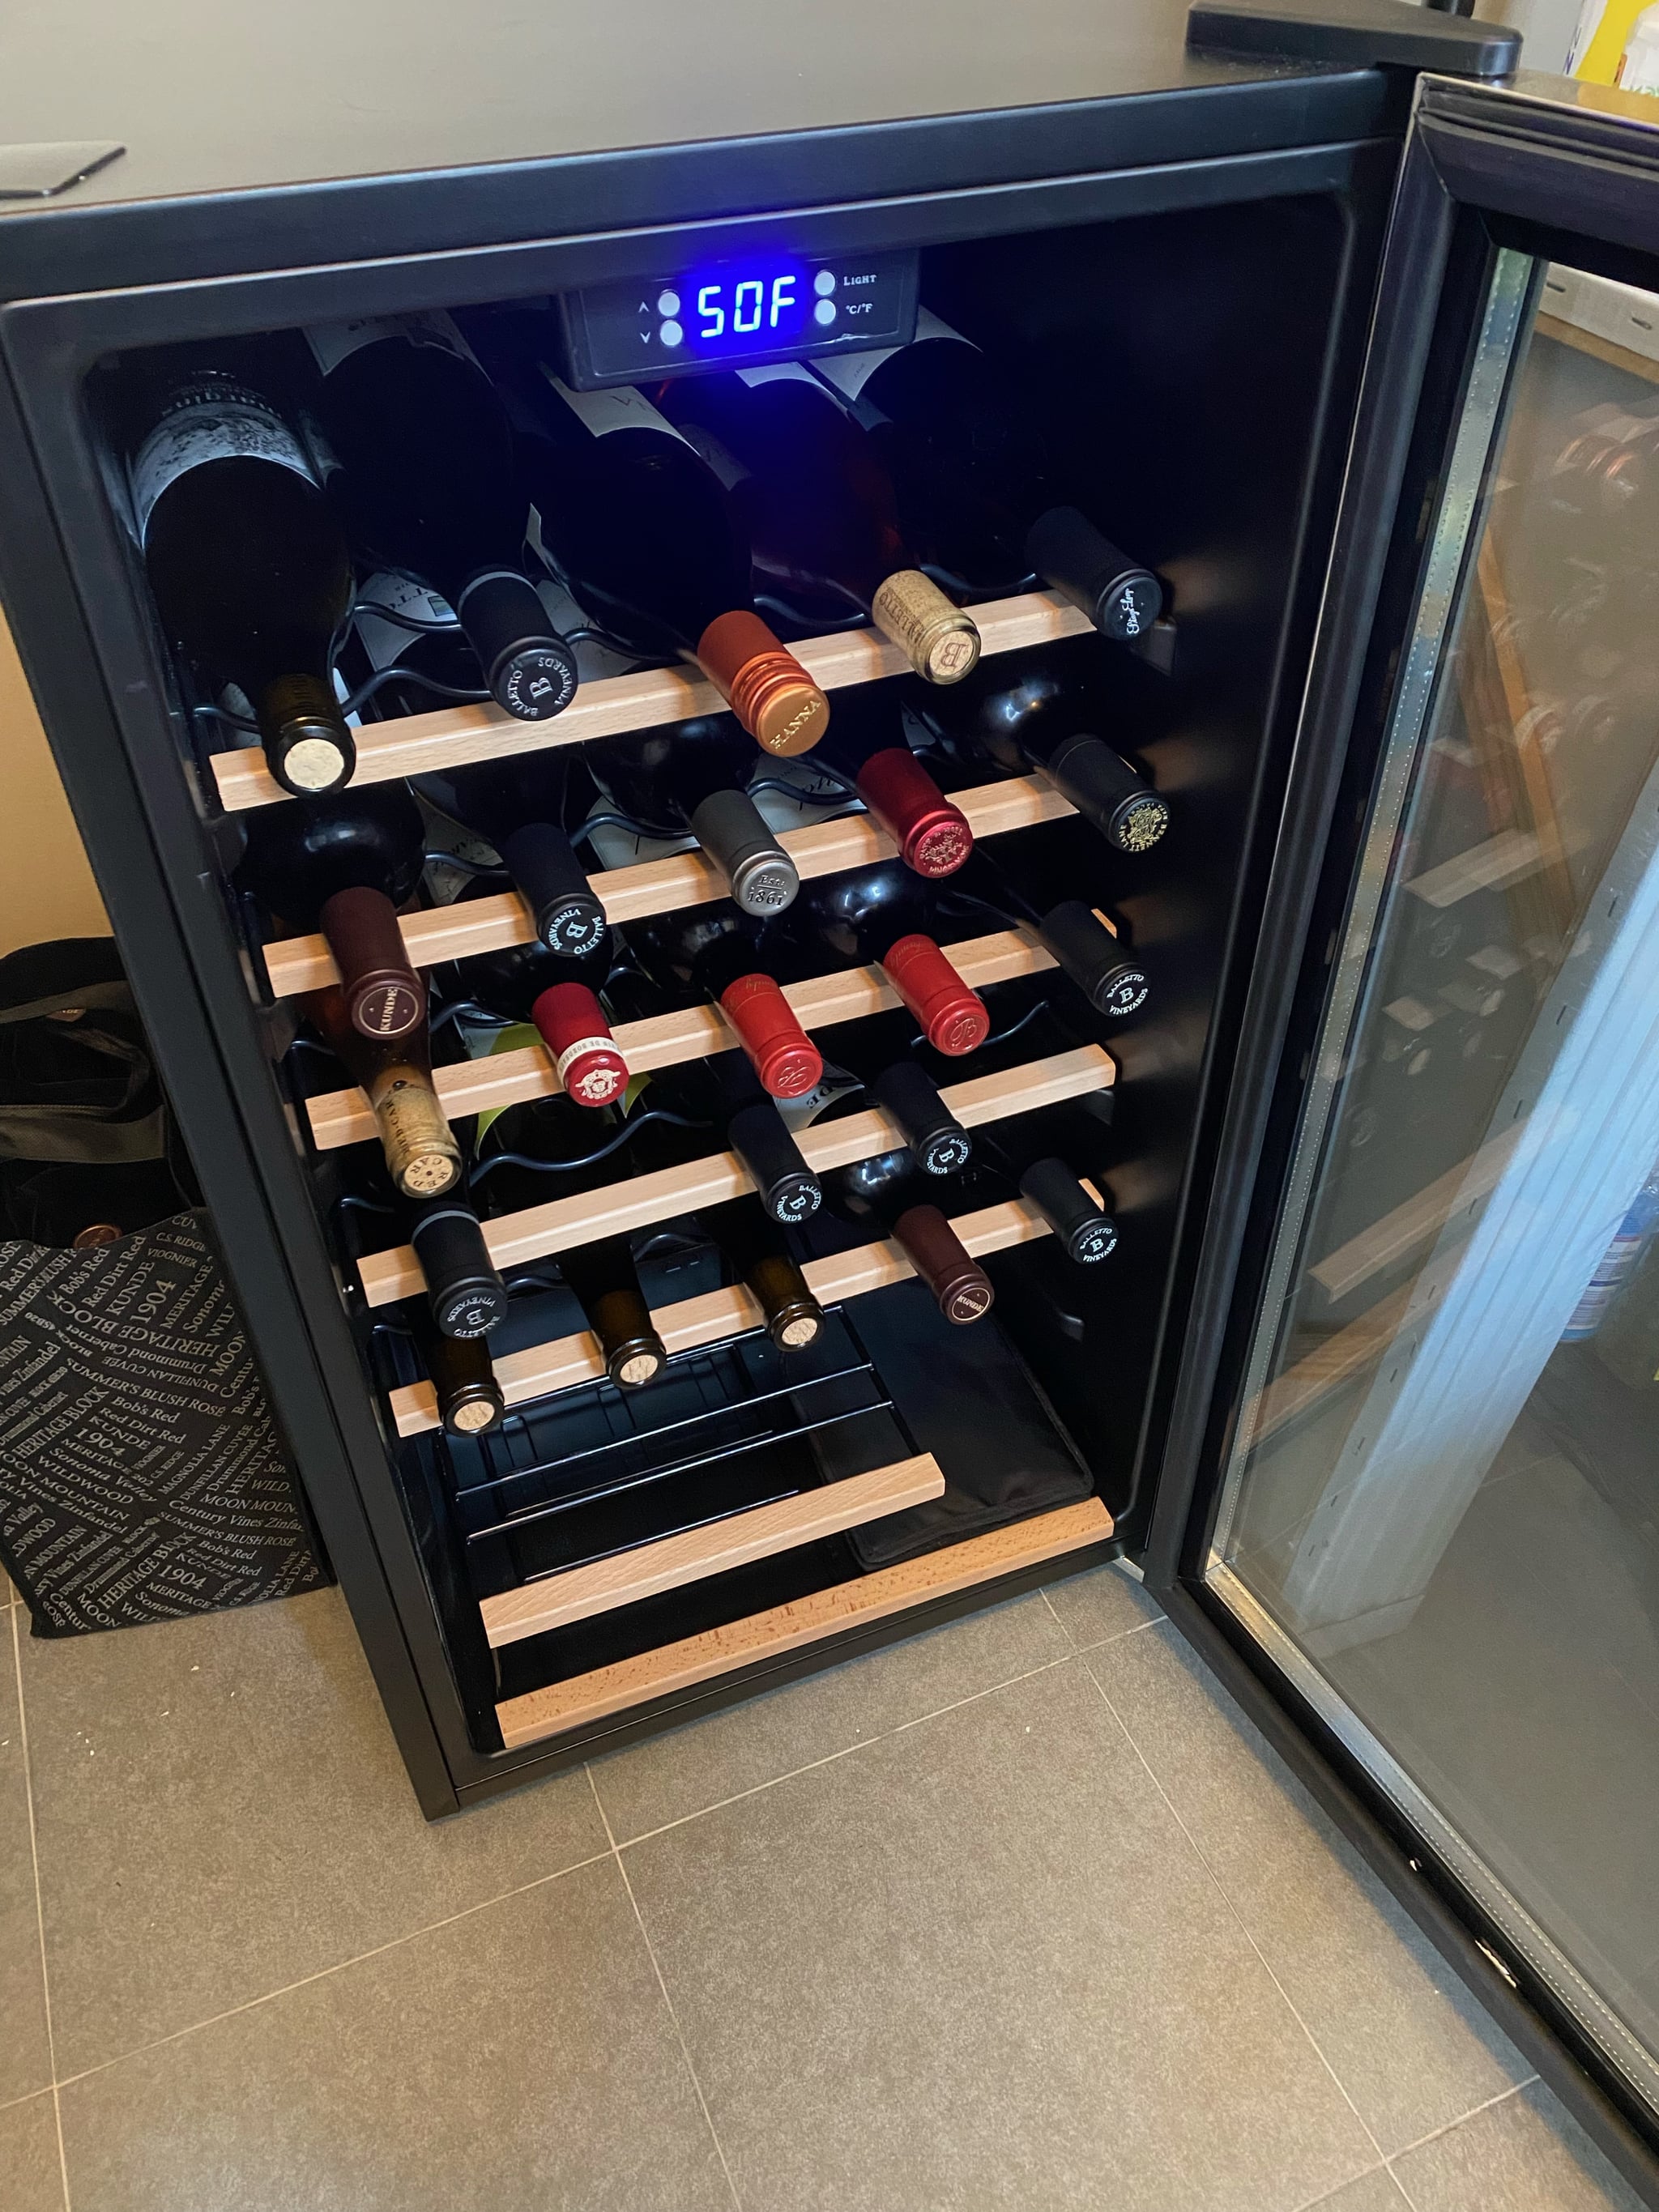 wine fridge 2